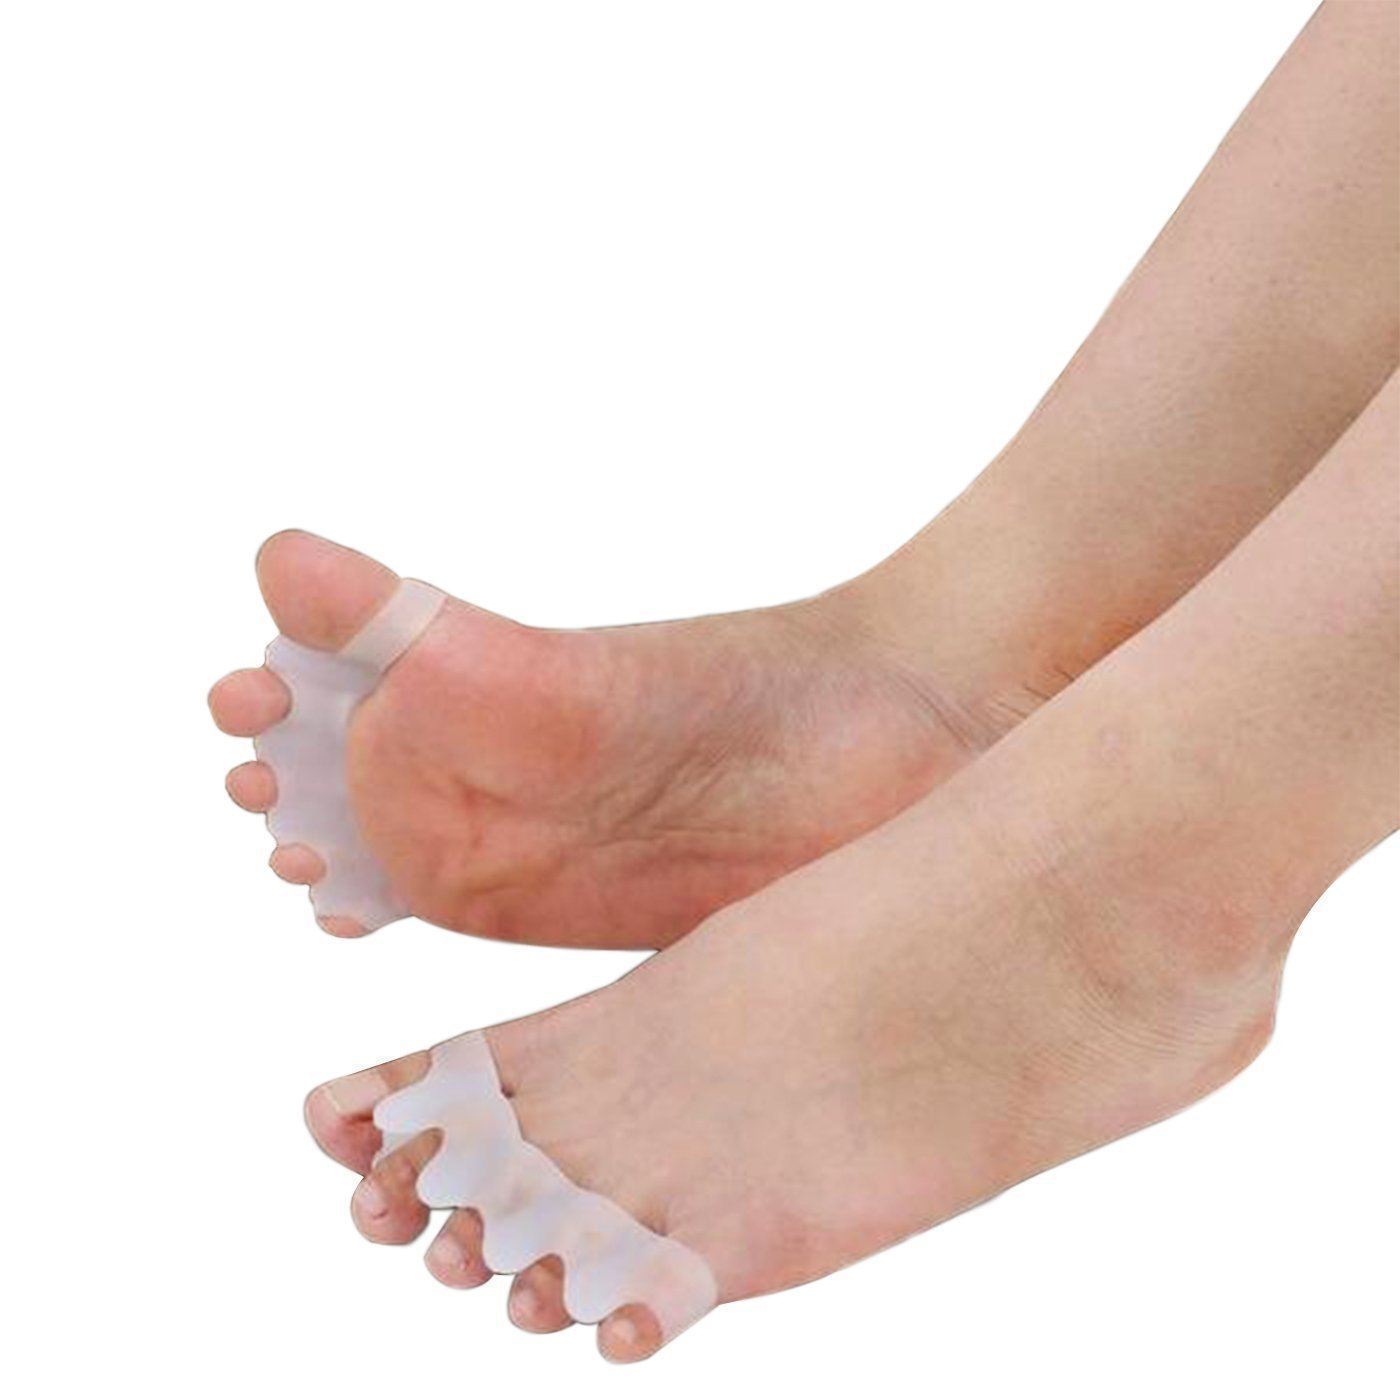 Toe Corrector for Pain Free Feet